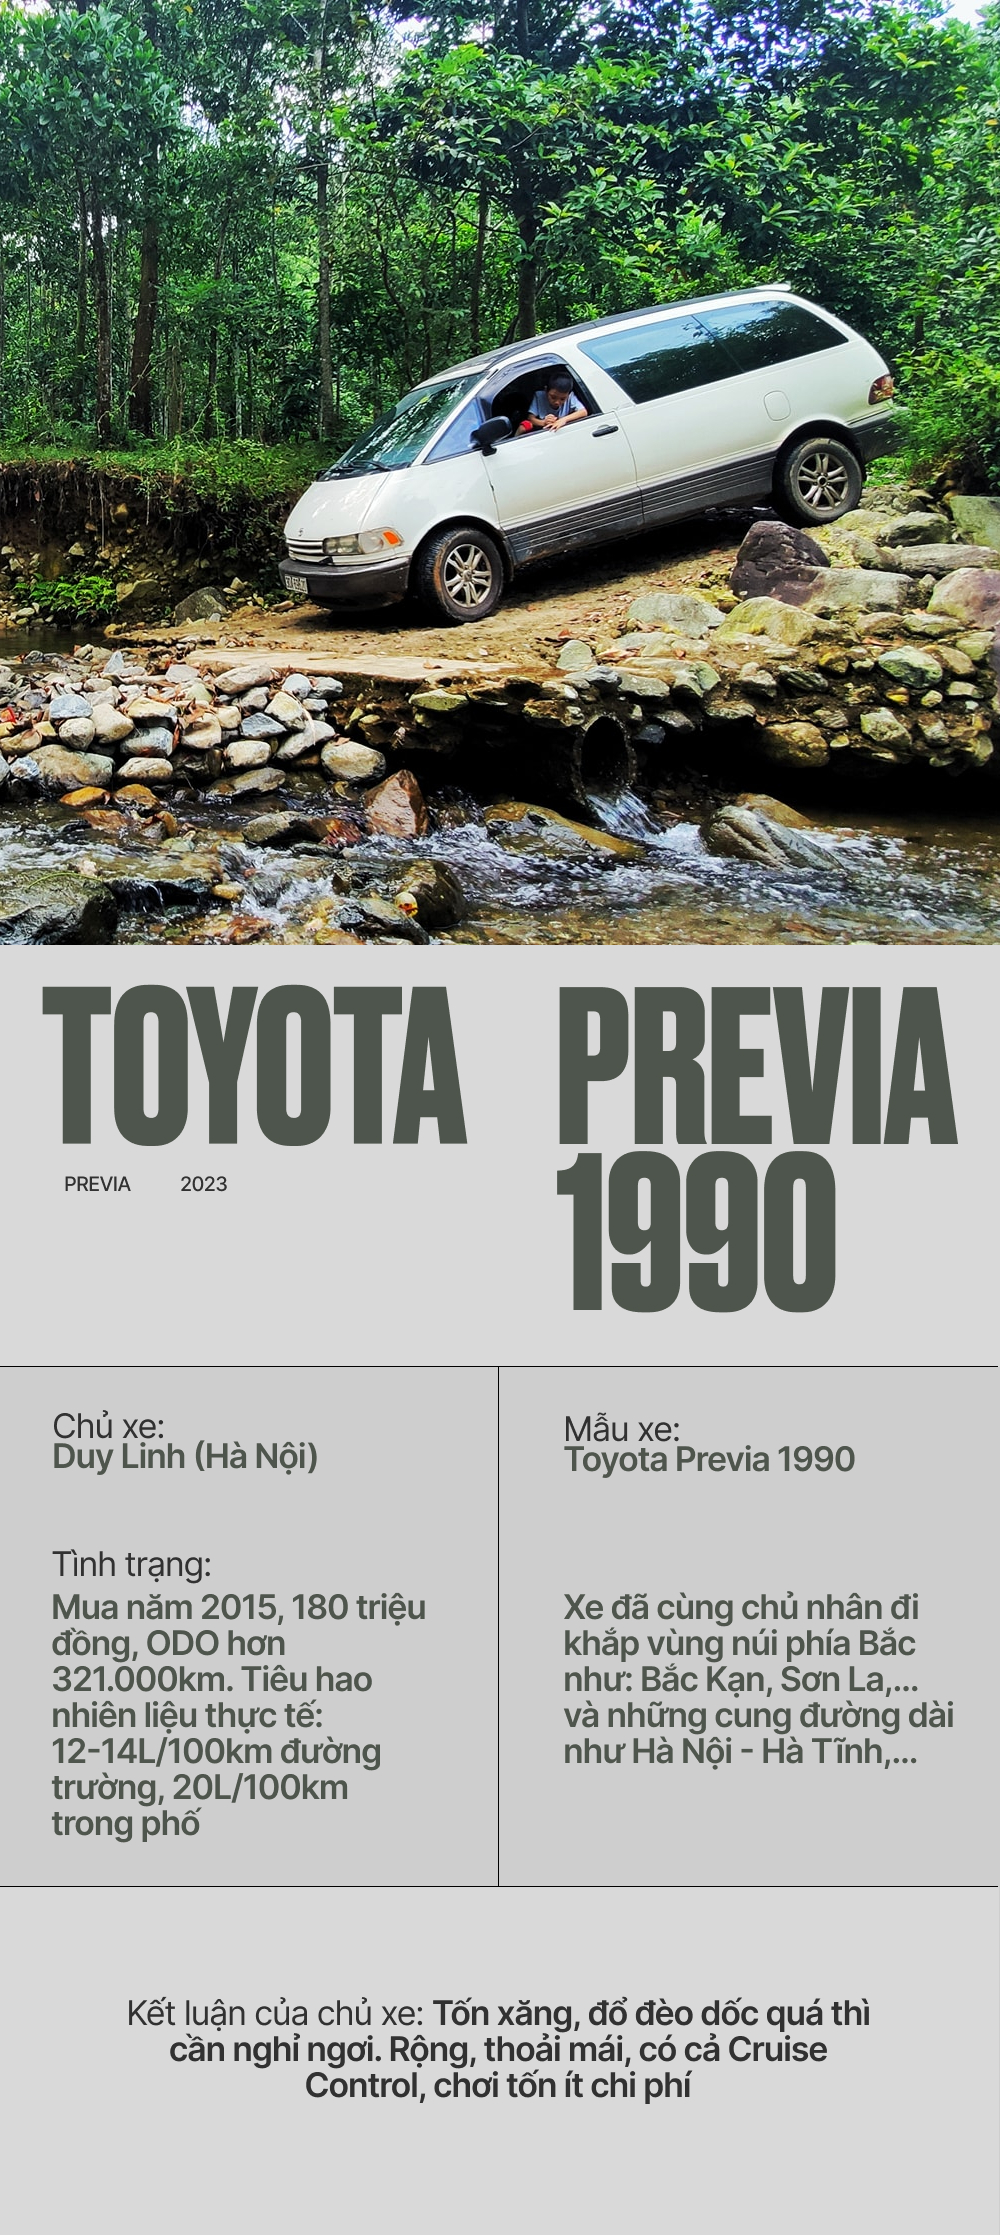 Tôi bỏ 180 triệu mua Toyota Previa 1990 chạy gần 10 năm nay: ''Ngốn xăng nhưng đáng từng đồng'' - ảnh 1